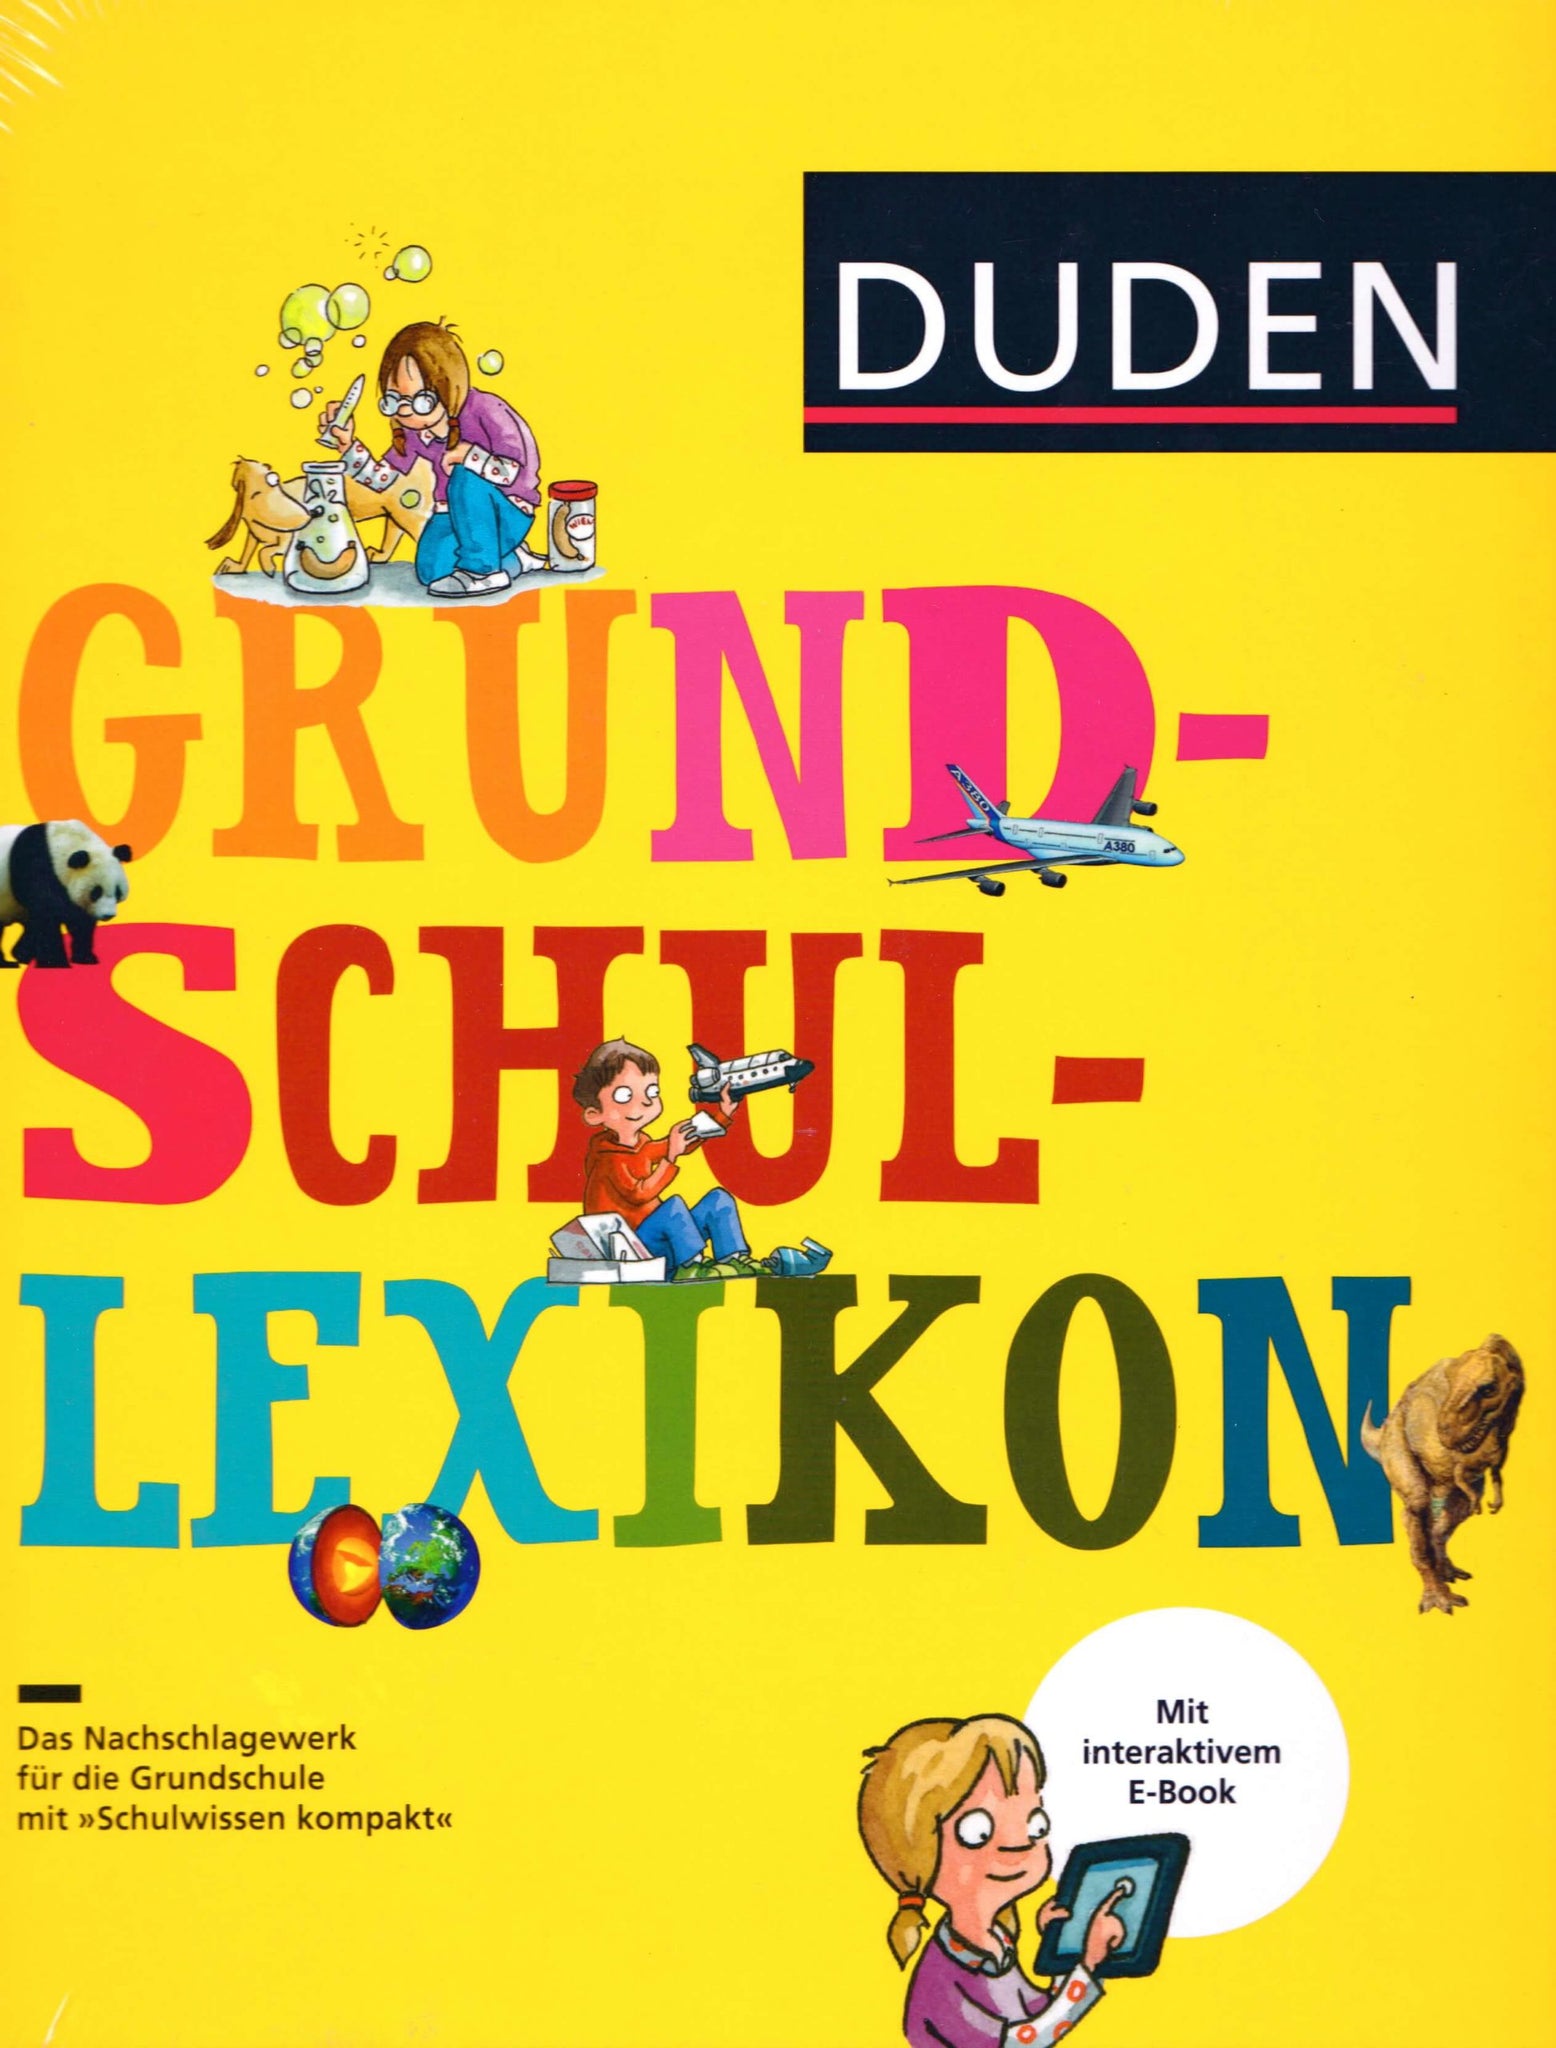 DUDEN-Grundschul-Lexikon-1